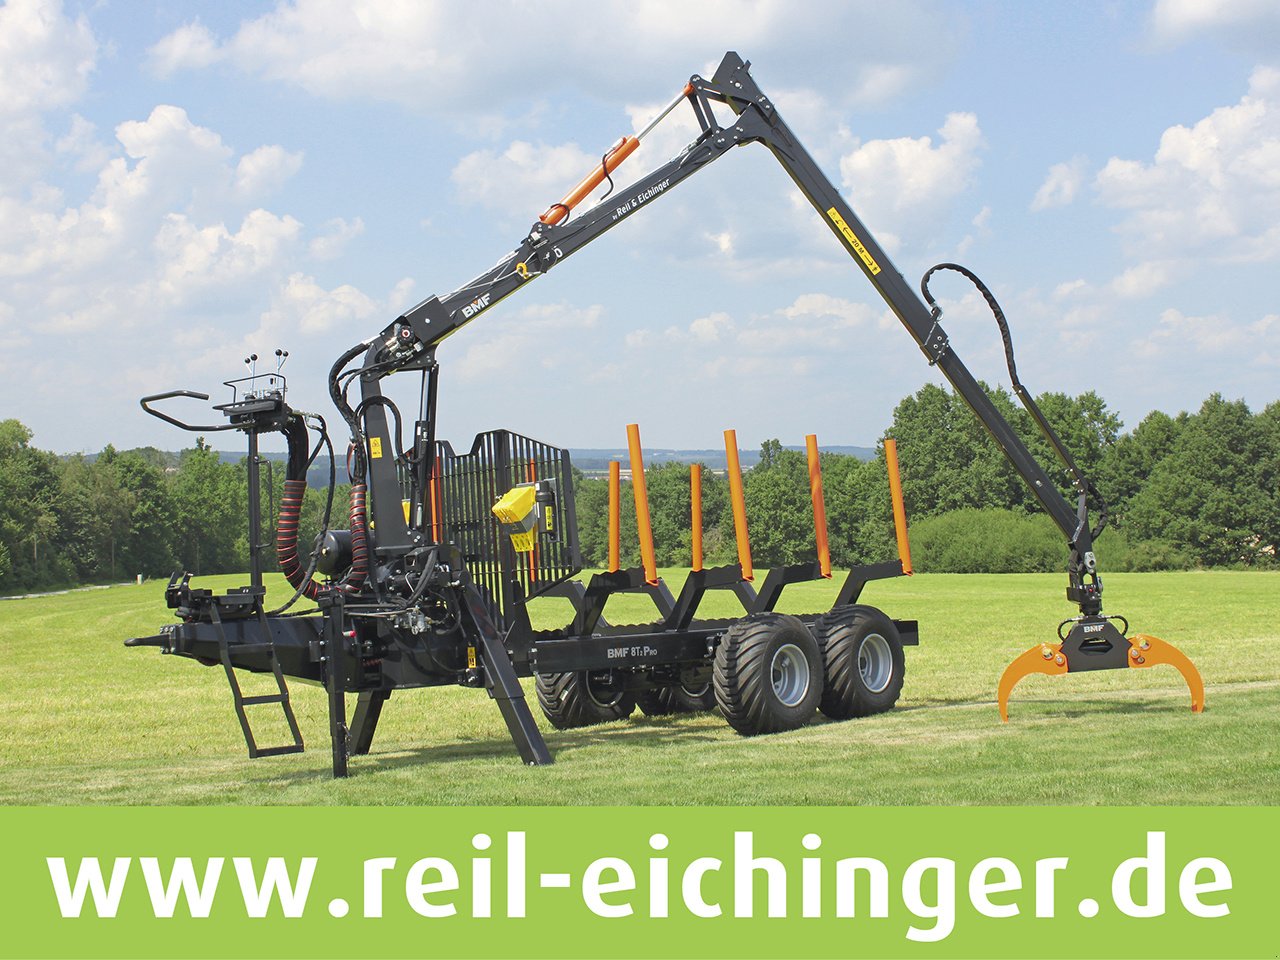 Rückewagen & Rückeanhänger des Typs Reil & Eichinger BMF 8T2/650 PRO, Neumaschine in Nittenau (Bild 1)